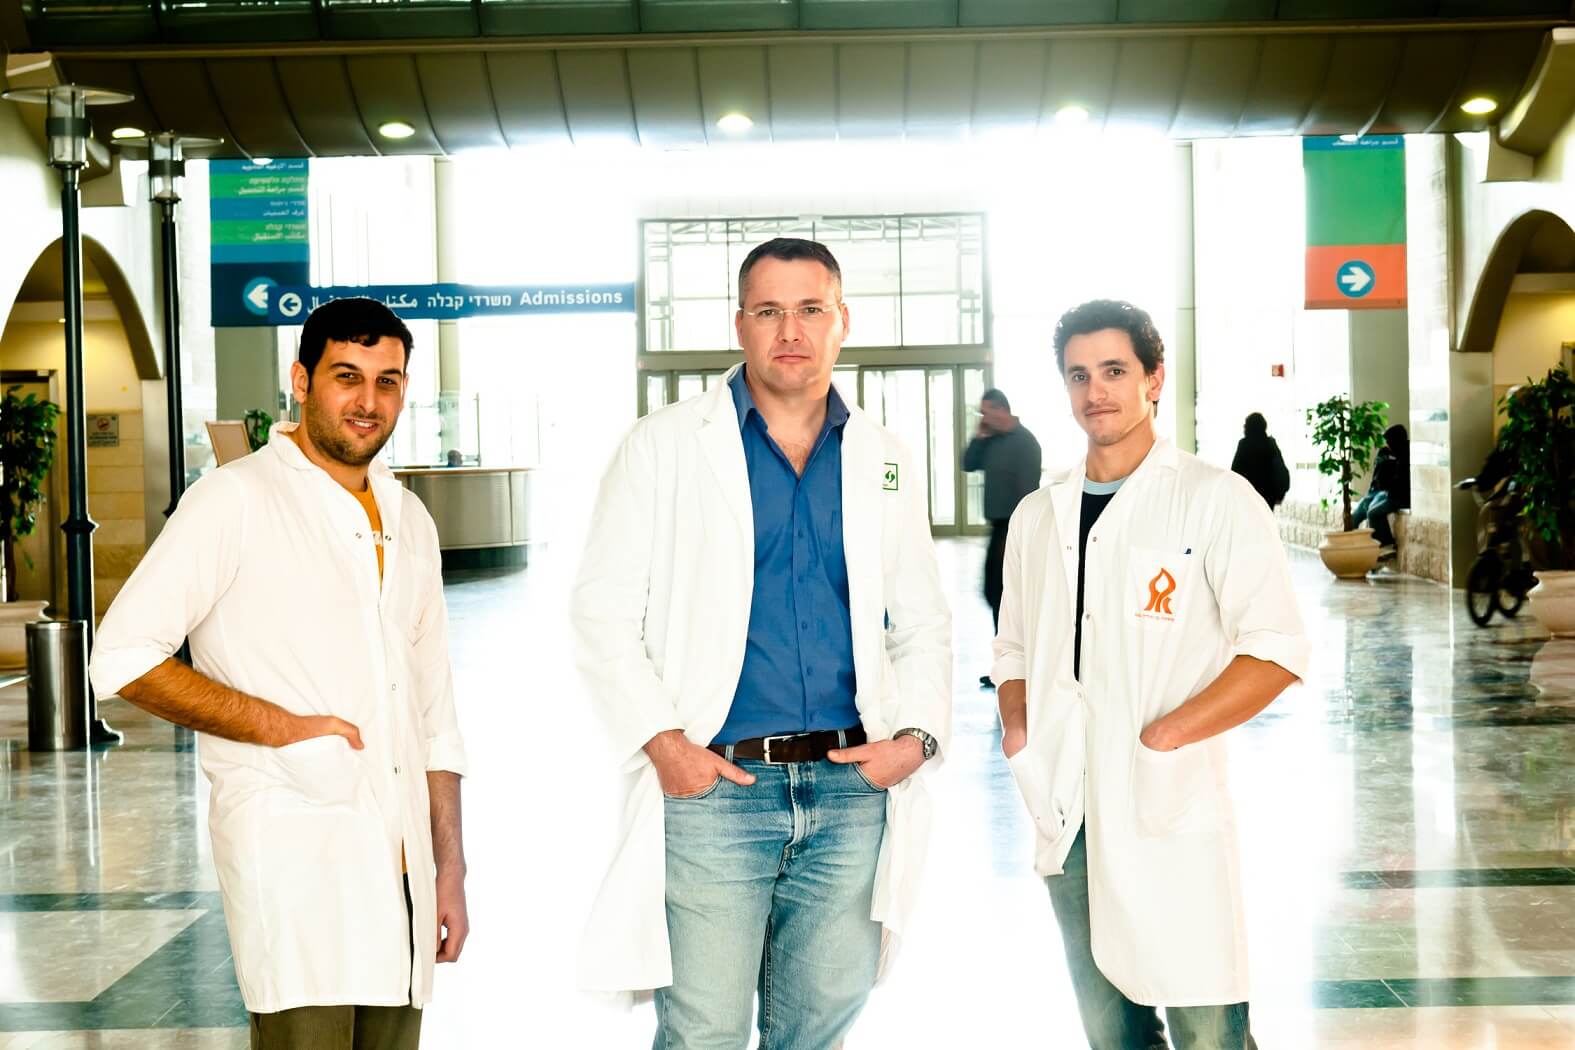 الدكتور إيلي لويس (في الوسط) مع إيال أوزاري وعضو آخر في المختبر - ديفيد أوهيون تصوير: داني ماتشليس، جامعة بن غوريون في النقب.